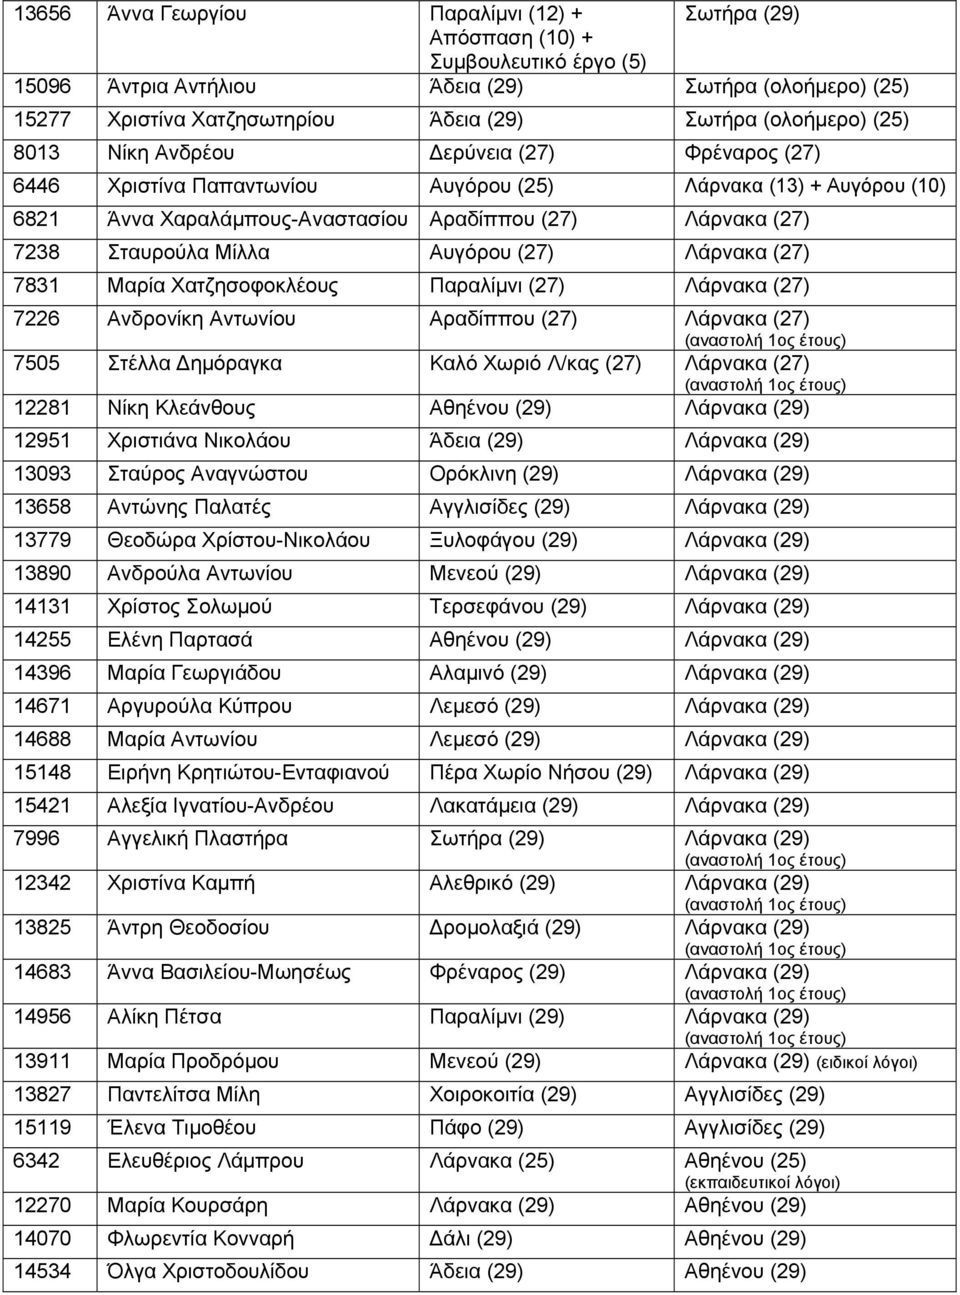 Σταυρούλα Μίλλα Αυγόρου (27) Λάρνακα (27) 7831 Μαρία Χατζησοφοκλέους Παραλίμνι (27) Λάρνακα (27) 7226 Ανδρονίκη Αντωνίου Αραδίππου (27) Λάρνακα (27) 7505 Στέλλα Δημόραγκα Καλό Χωριό Λ/κας (27)